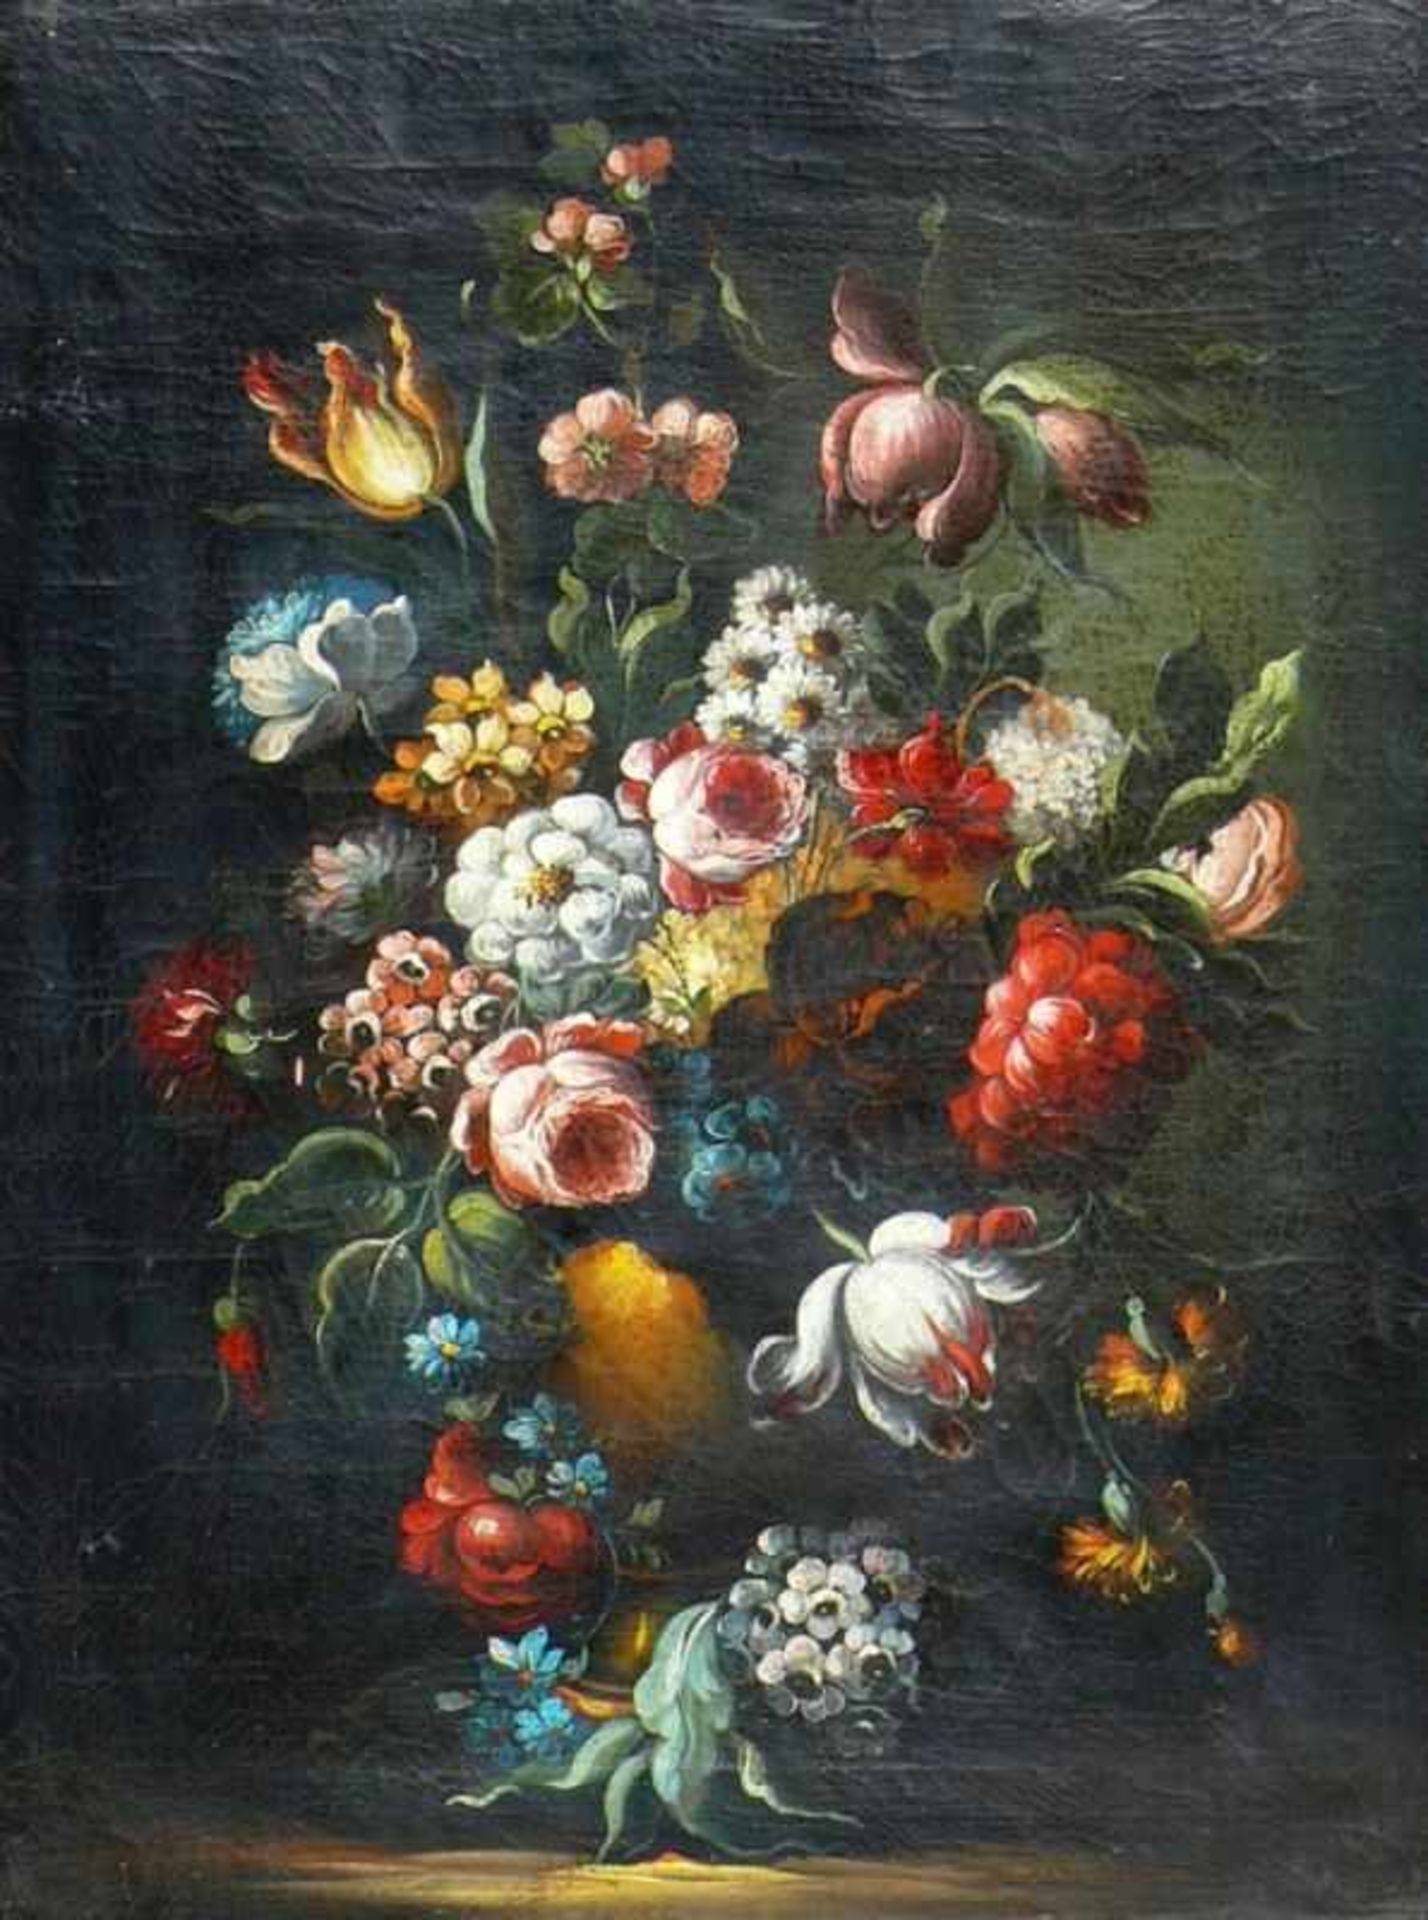 Anonym (18./19.Jh.) "Blumenstillleben in Vase"; farbiger Sommerblumenstrauß auf dunklem Hintergrund;